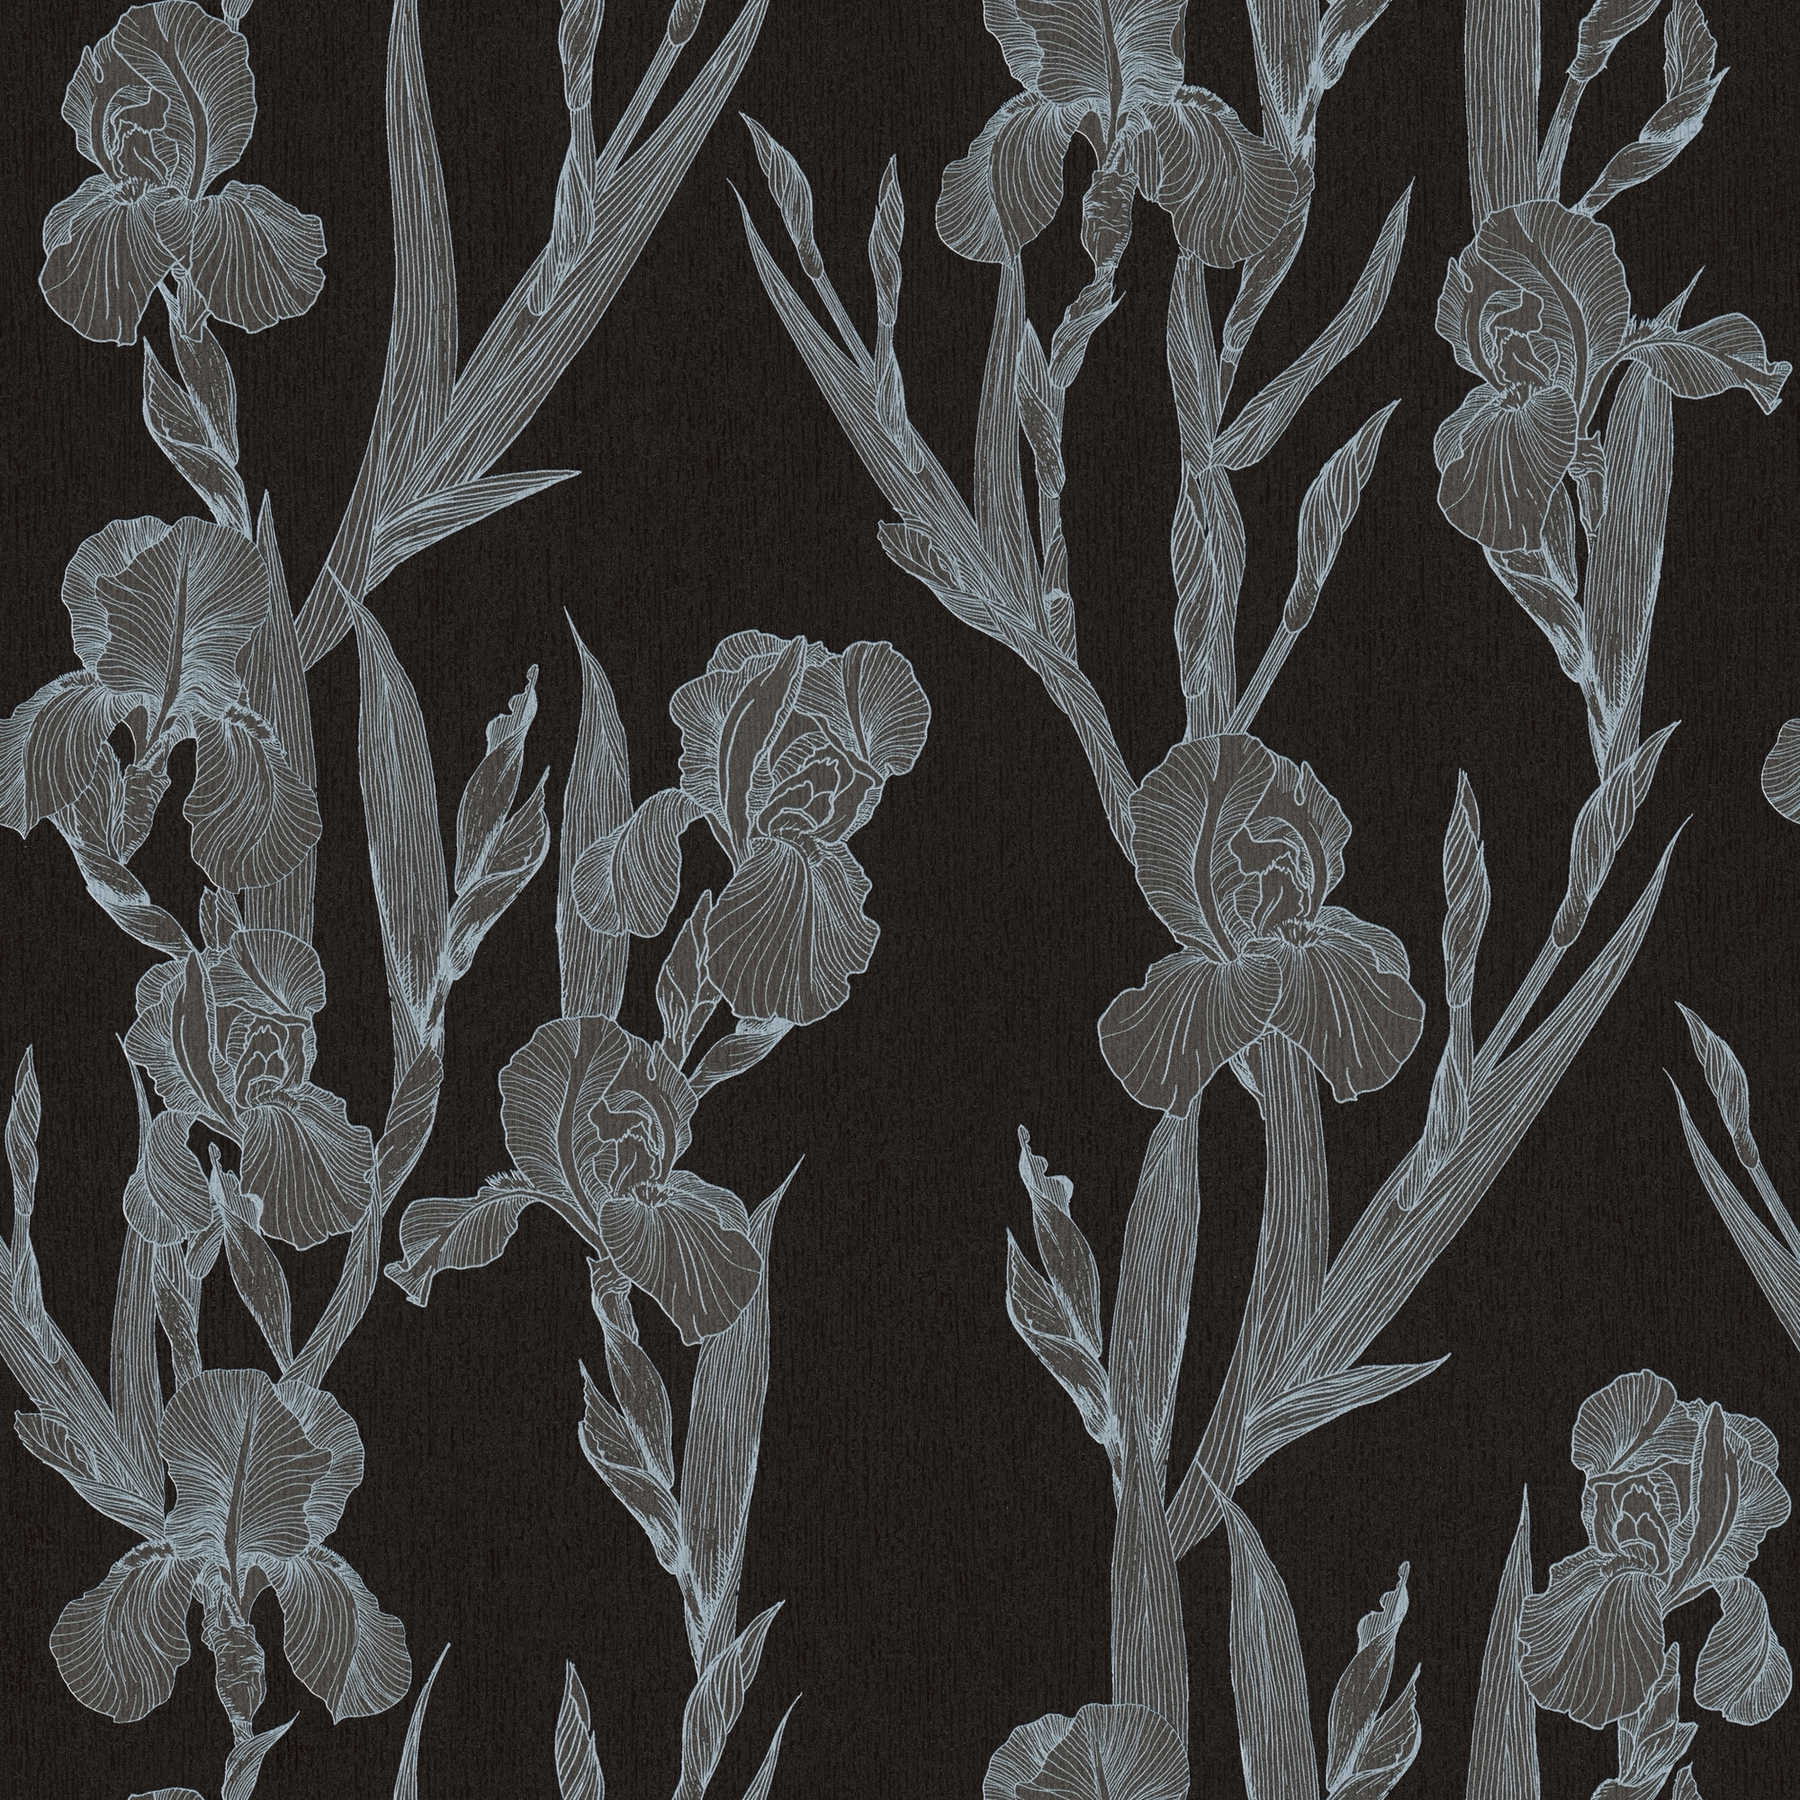 Modern floral wallpaper stylized, flower tendrils - black, grey, white
